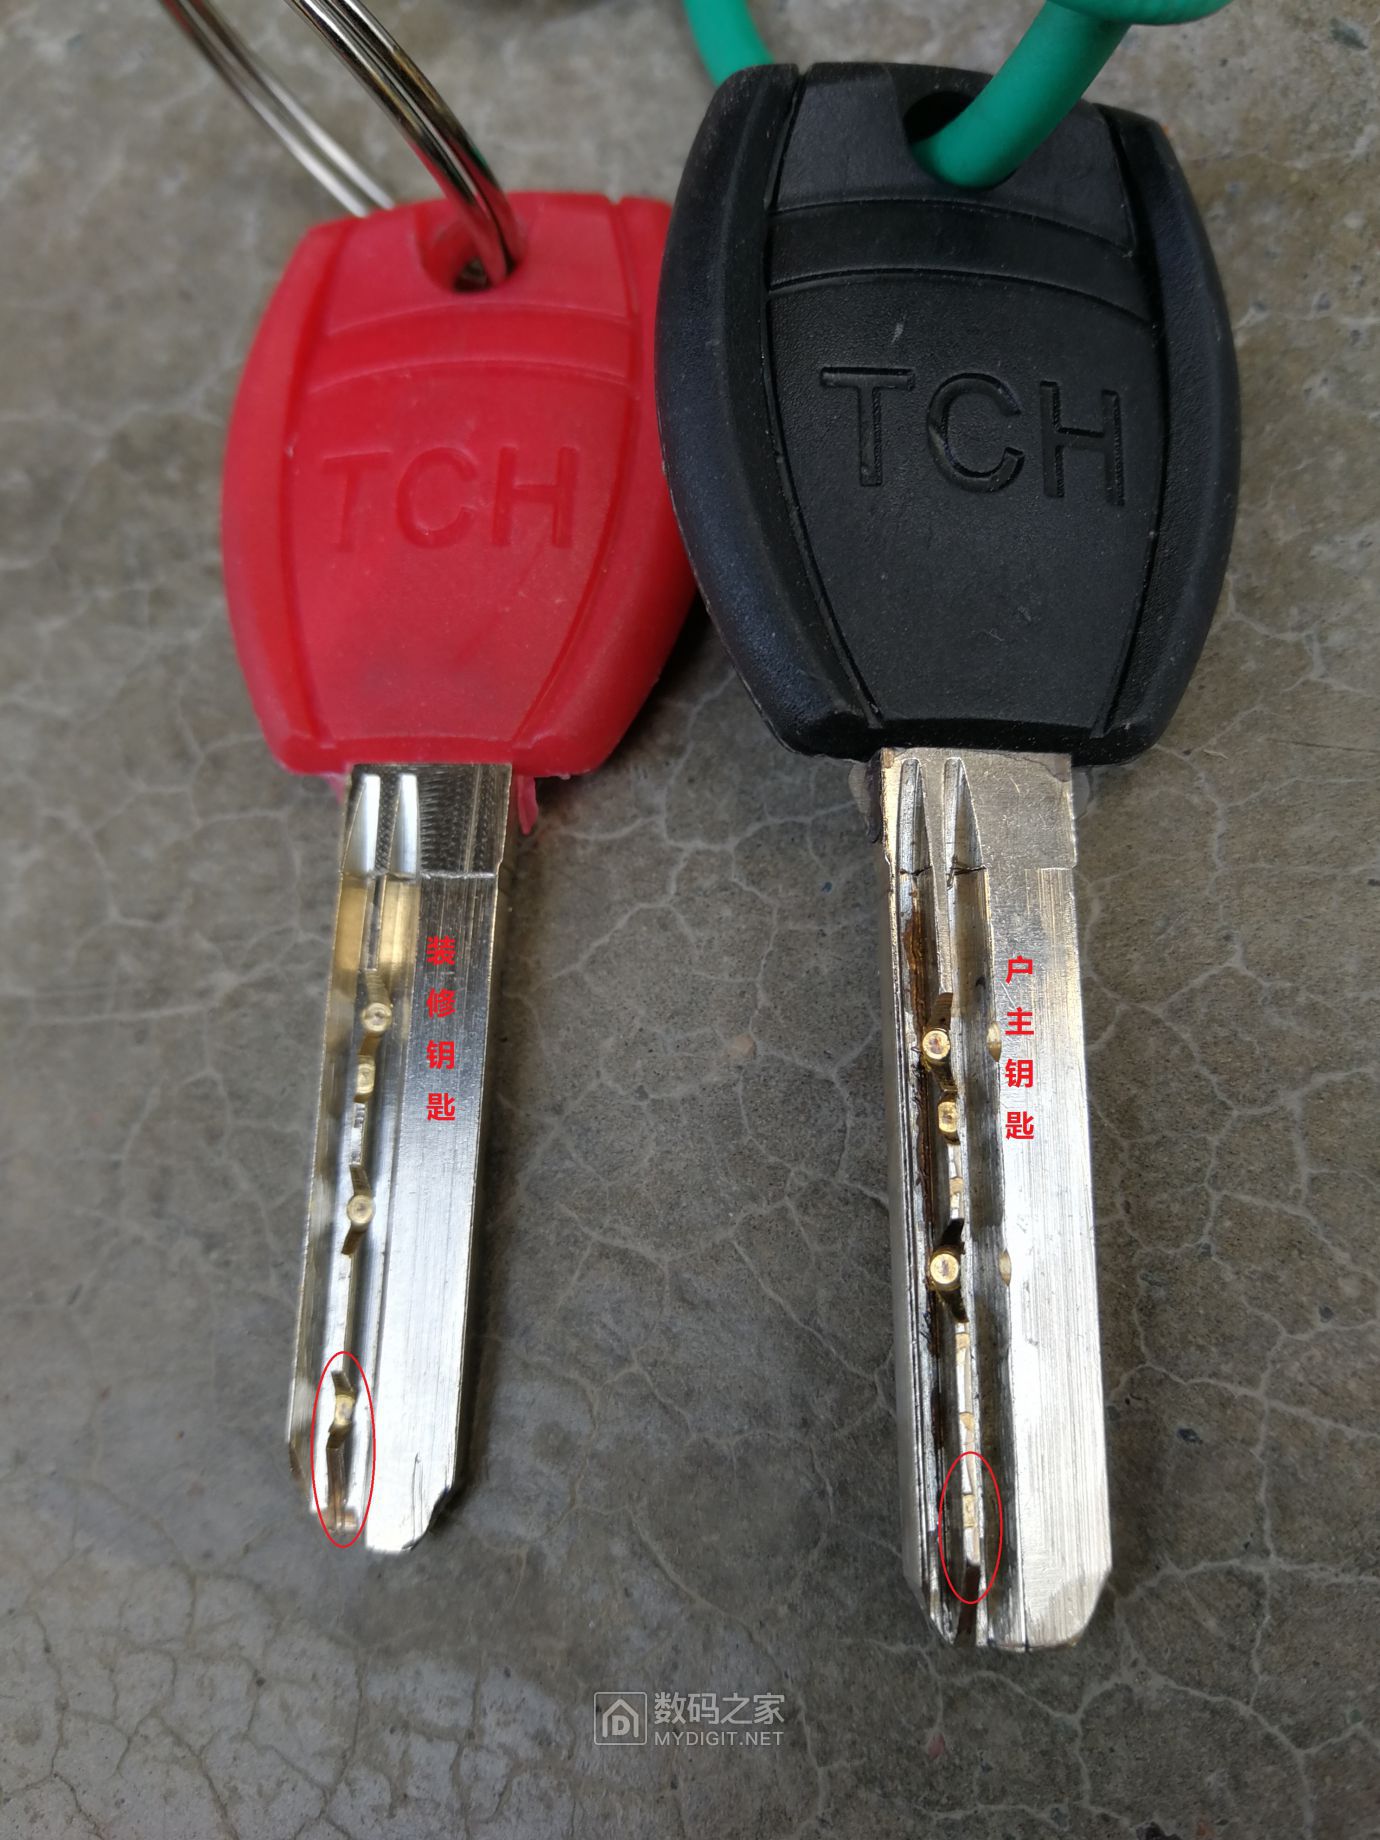 装修钥匙与户主钥匙对比图